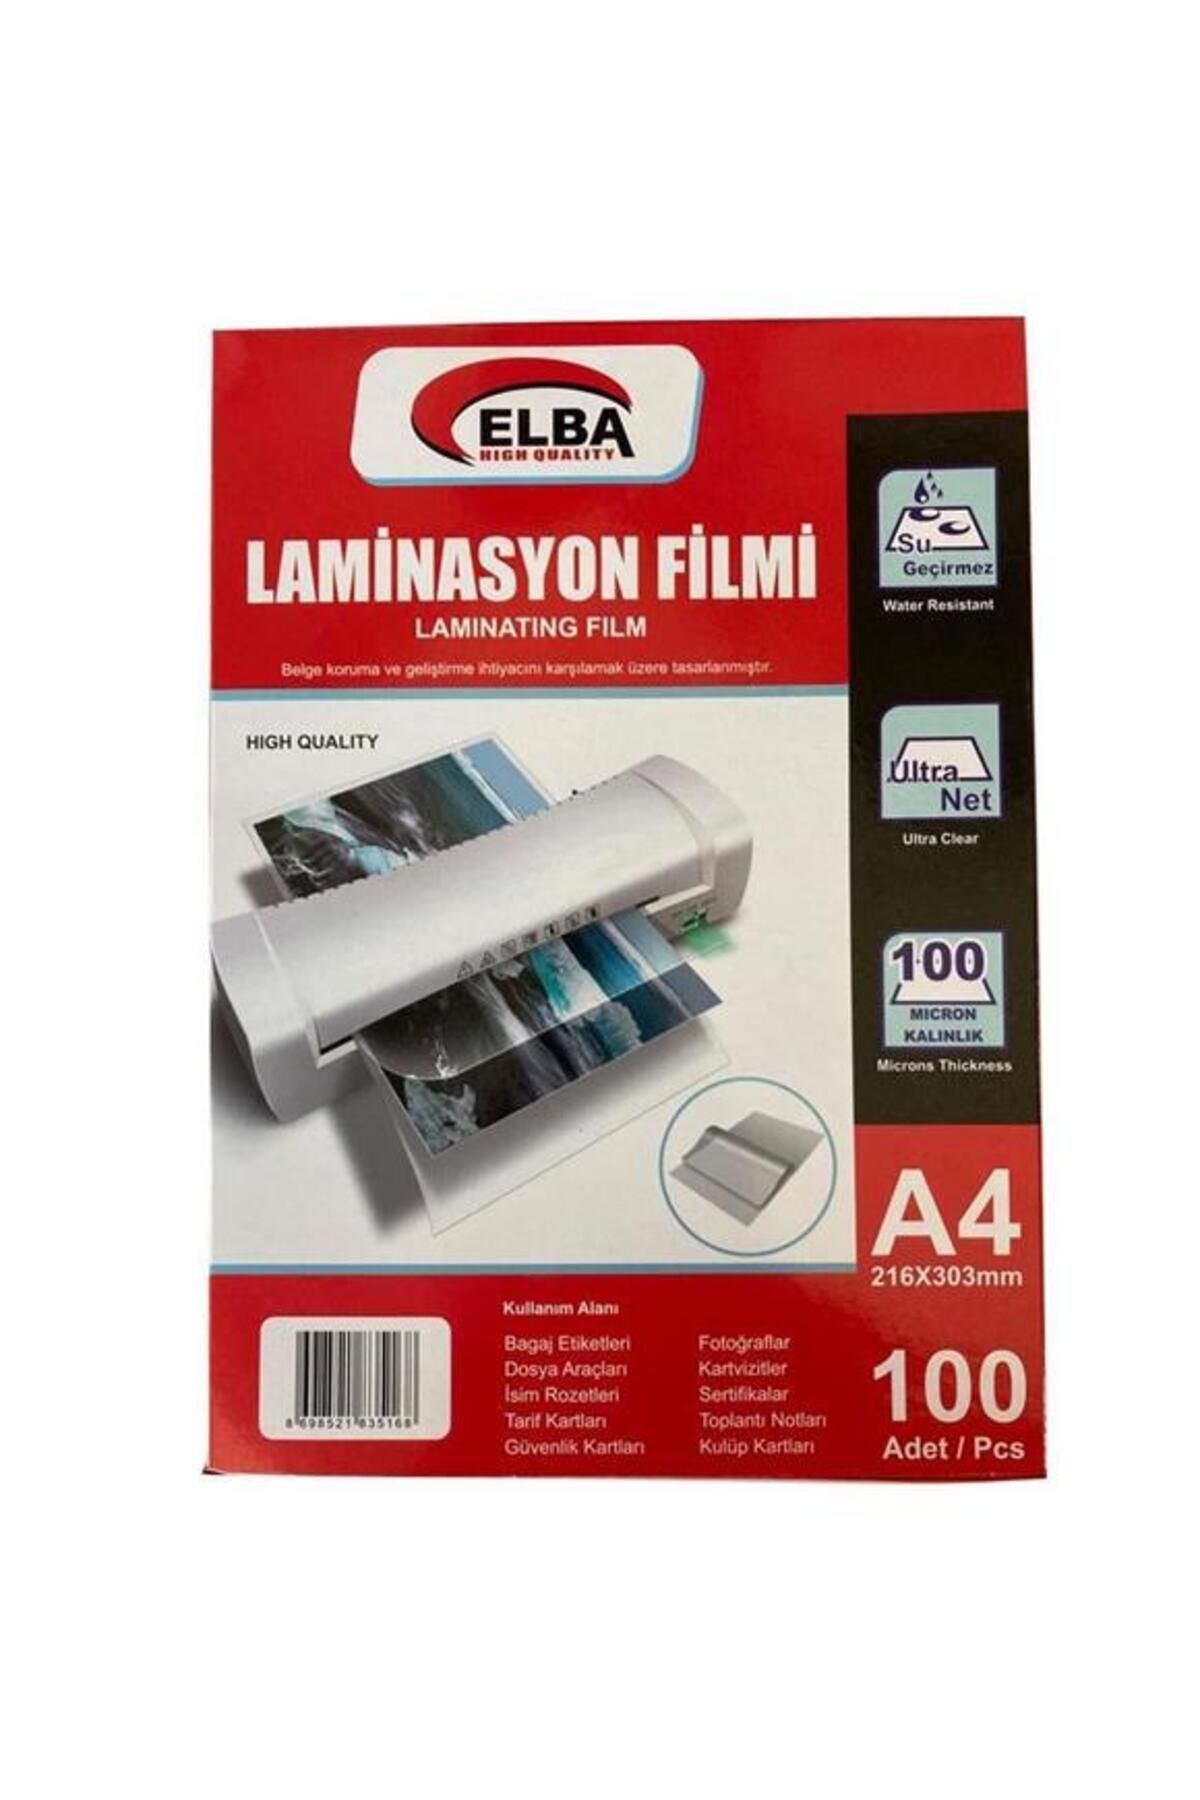 ELBA Laminasyon Filmi A4 100 Mıc (100 LÜ) 216x303